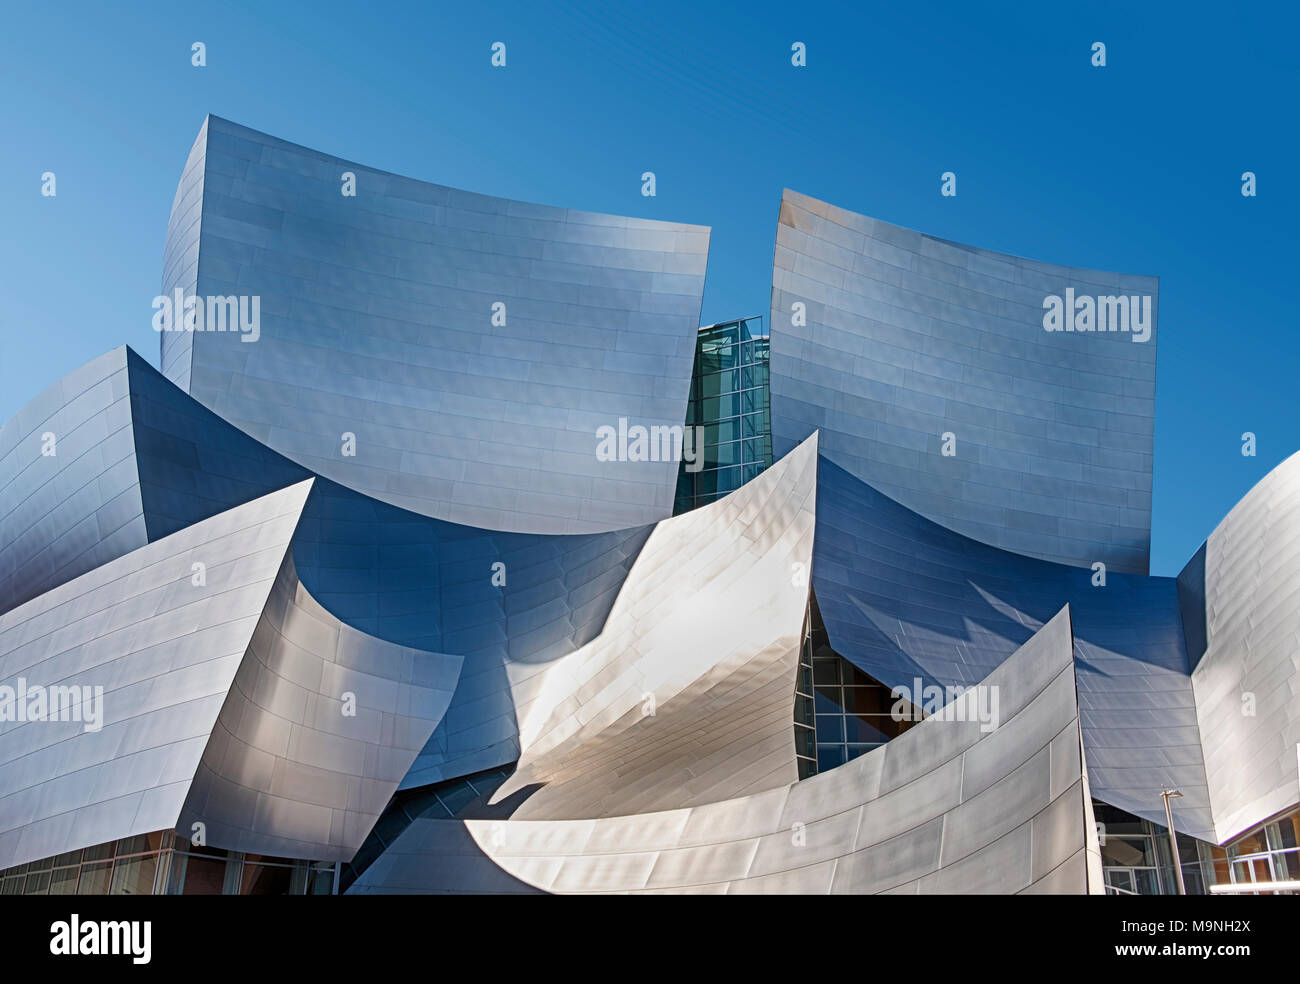 LOS ANGELES, USA - 25. SEPTEMBER 2017: Die majestätische Fassade des Walt Disney Philharmonic Hall in Los Angeles Highlights der Architektur. Stockfoto